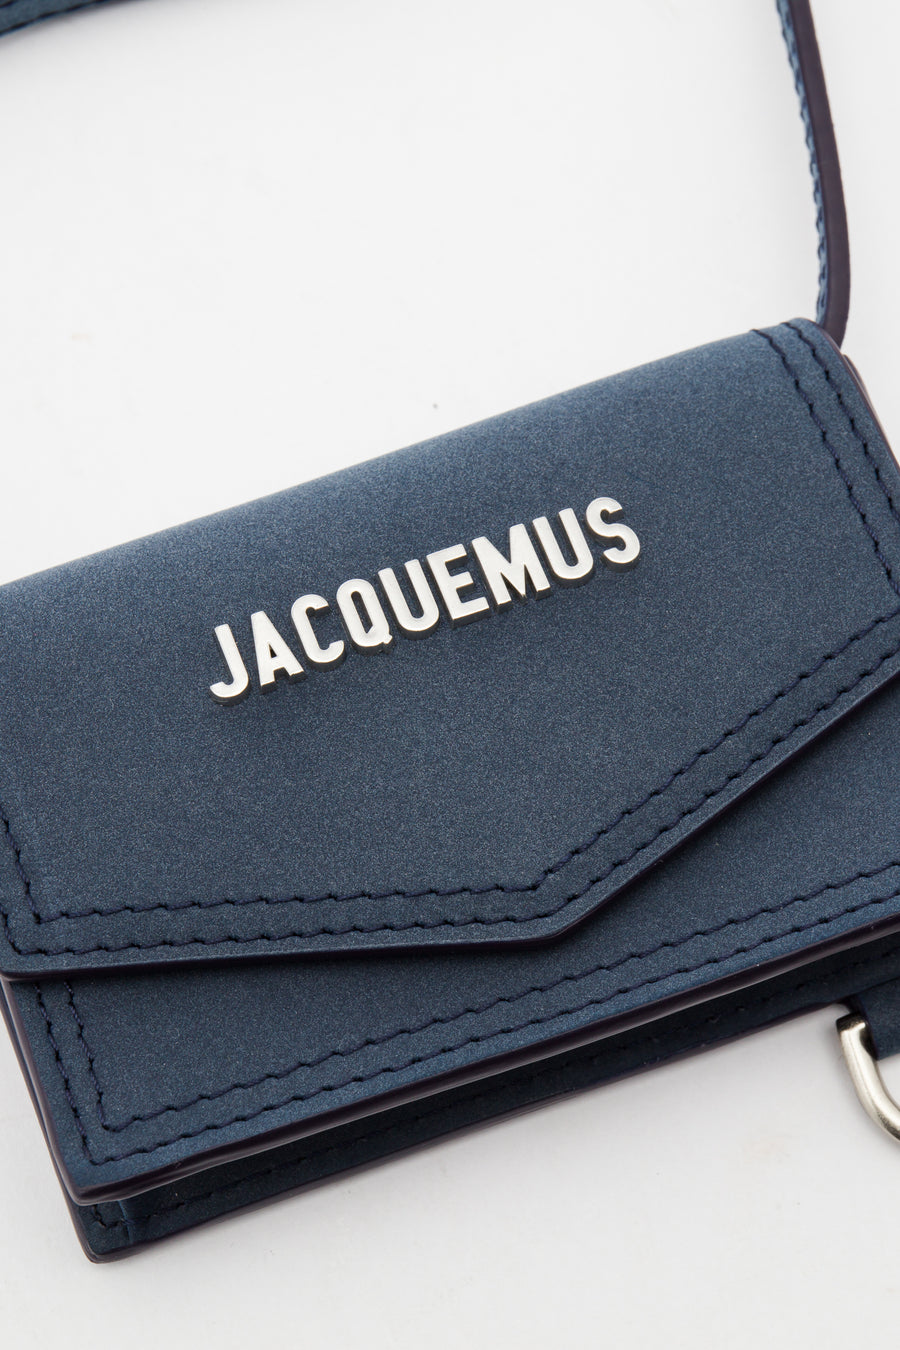 Jacquemus Le Porte Azur Unisex Light Blue in Leather - Size: Uni